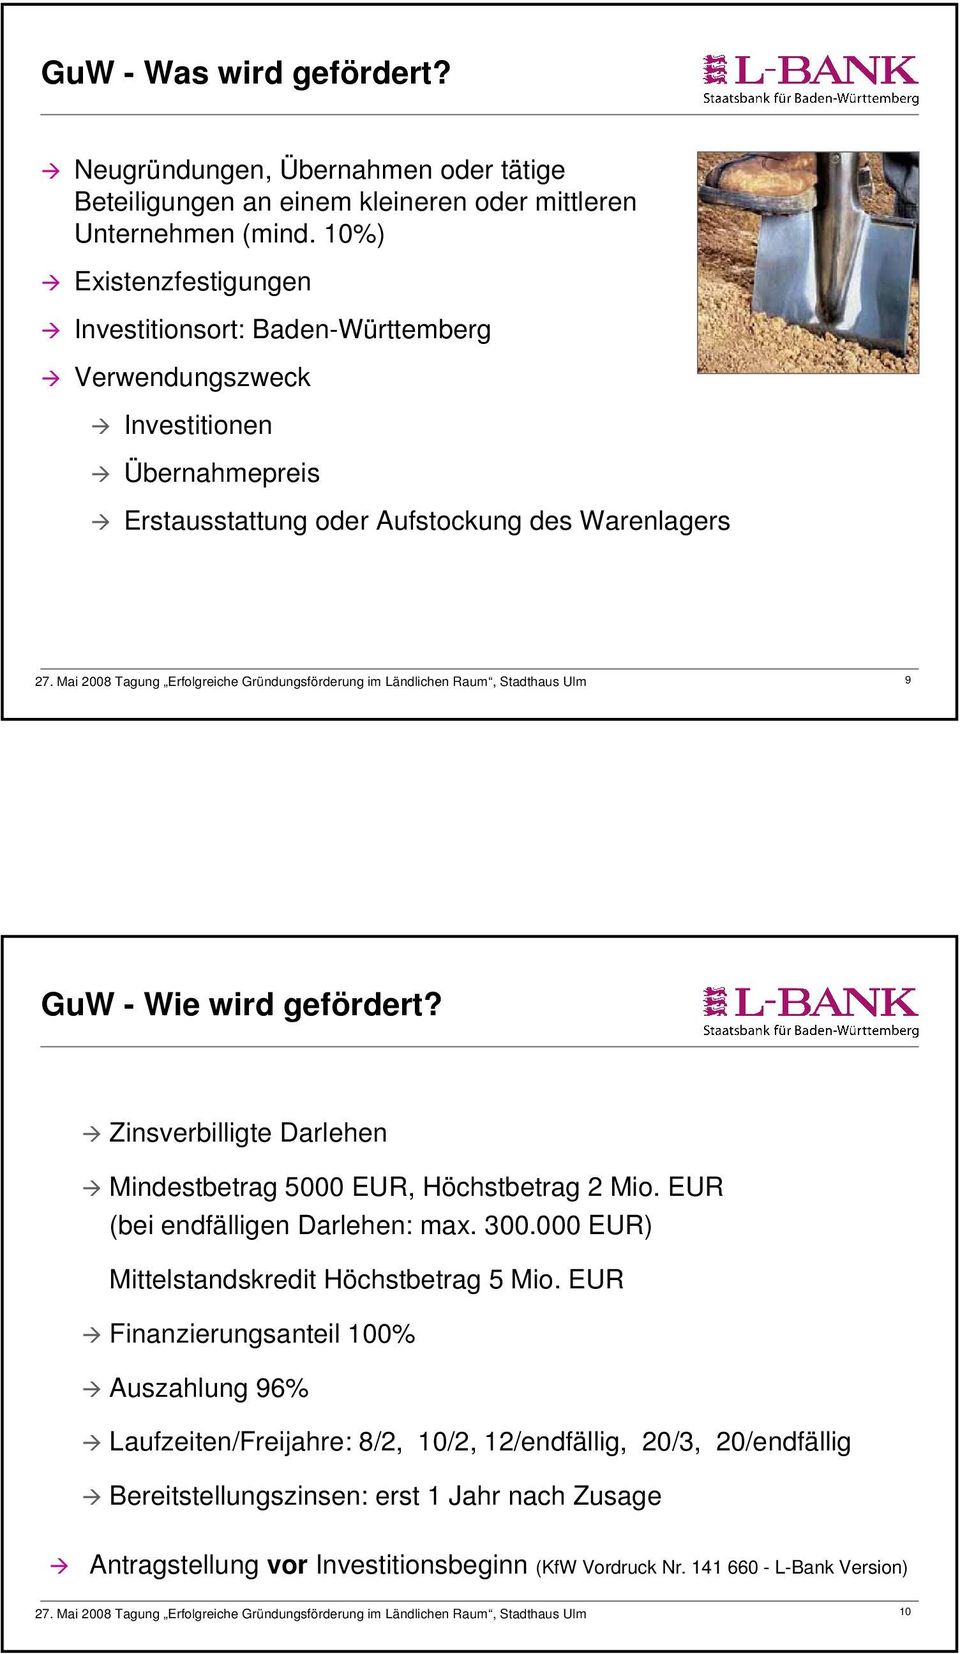 GuW - Wie wird gefördert? Zinsverbilligte Darlehen Mindestbetrag 5000 EUR, Höchstbetrag 2 Mio. EUR (bei endfälligen Darlehen: max. 300.